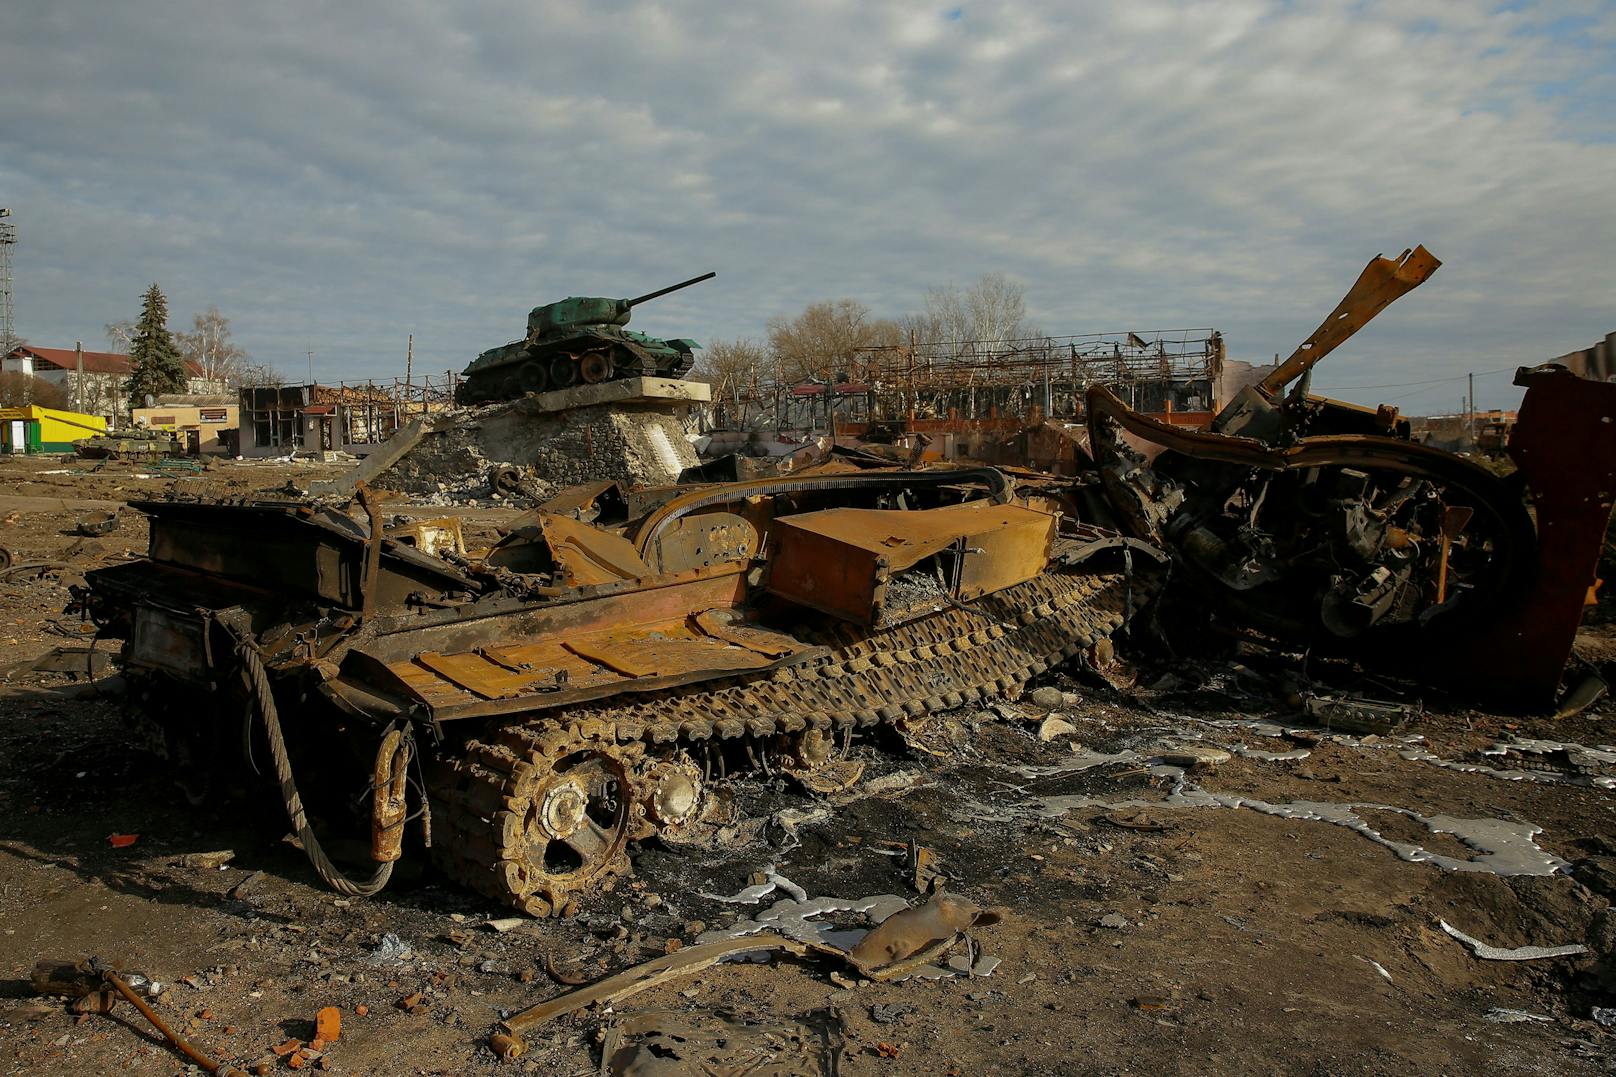 Seit dem Beginn seiner Invasion habe Russland mehr als 17.000 Soldaten, mehr als 1.700 gepanzerte Fahrzeuge und fast 600 Panzer verloren, sagte Kyslyzja am Dienstag im UNO-Sicherheitsrat.